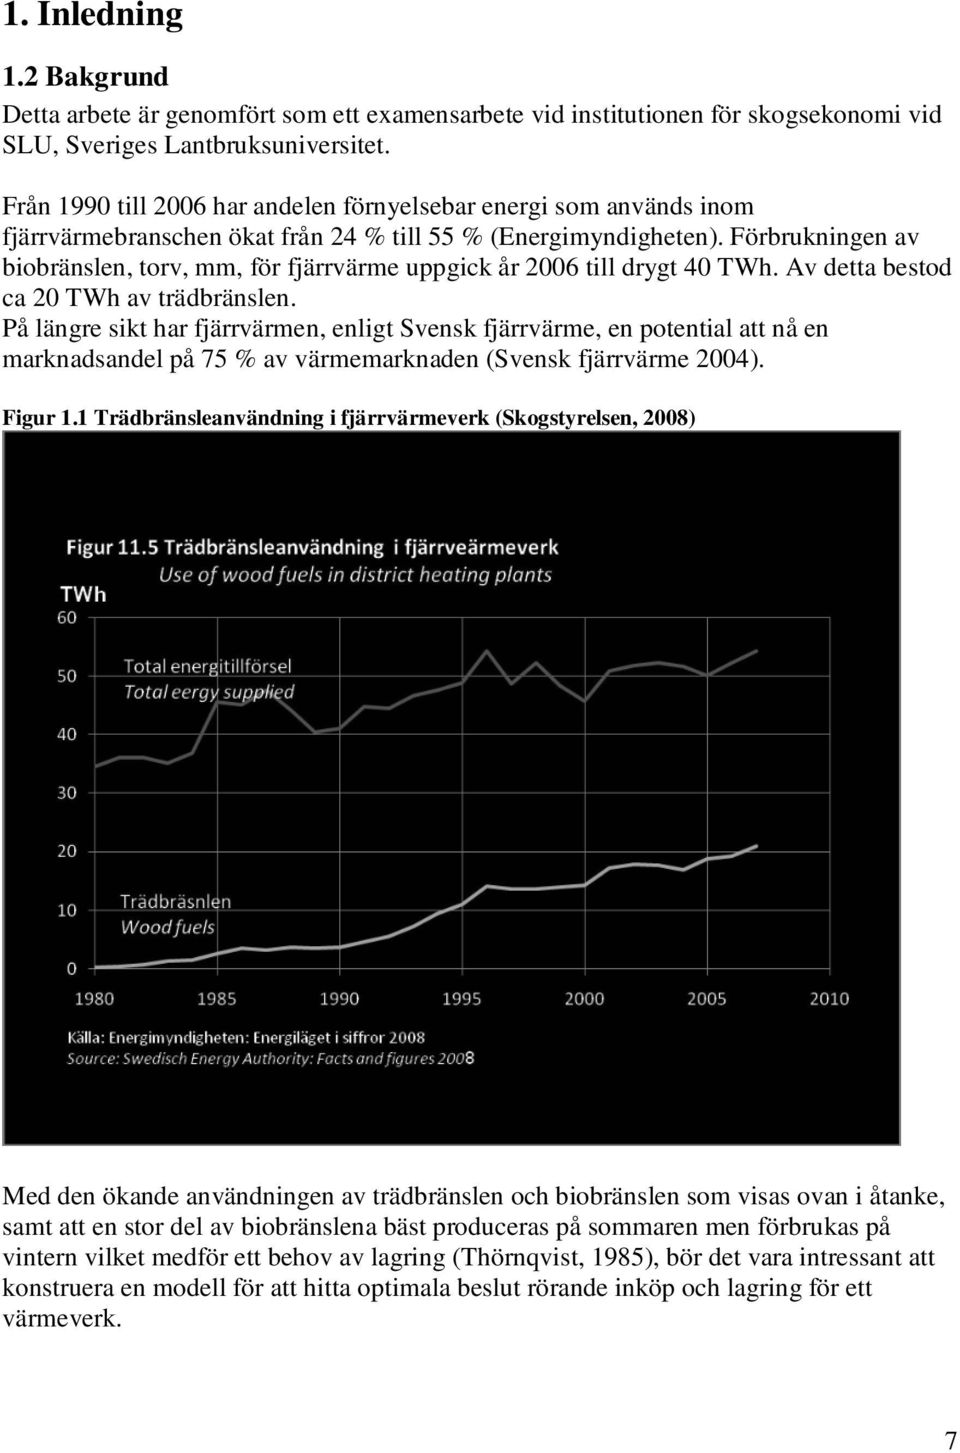 Förbrukningen av biobränslen, torv, mm, för fjärrvärme uppgick år 2006 till drygt 40 TWh. Av detta bestod ca 20 TWh av trädbränslen.